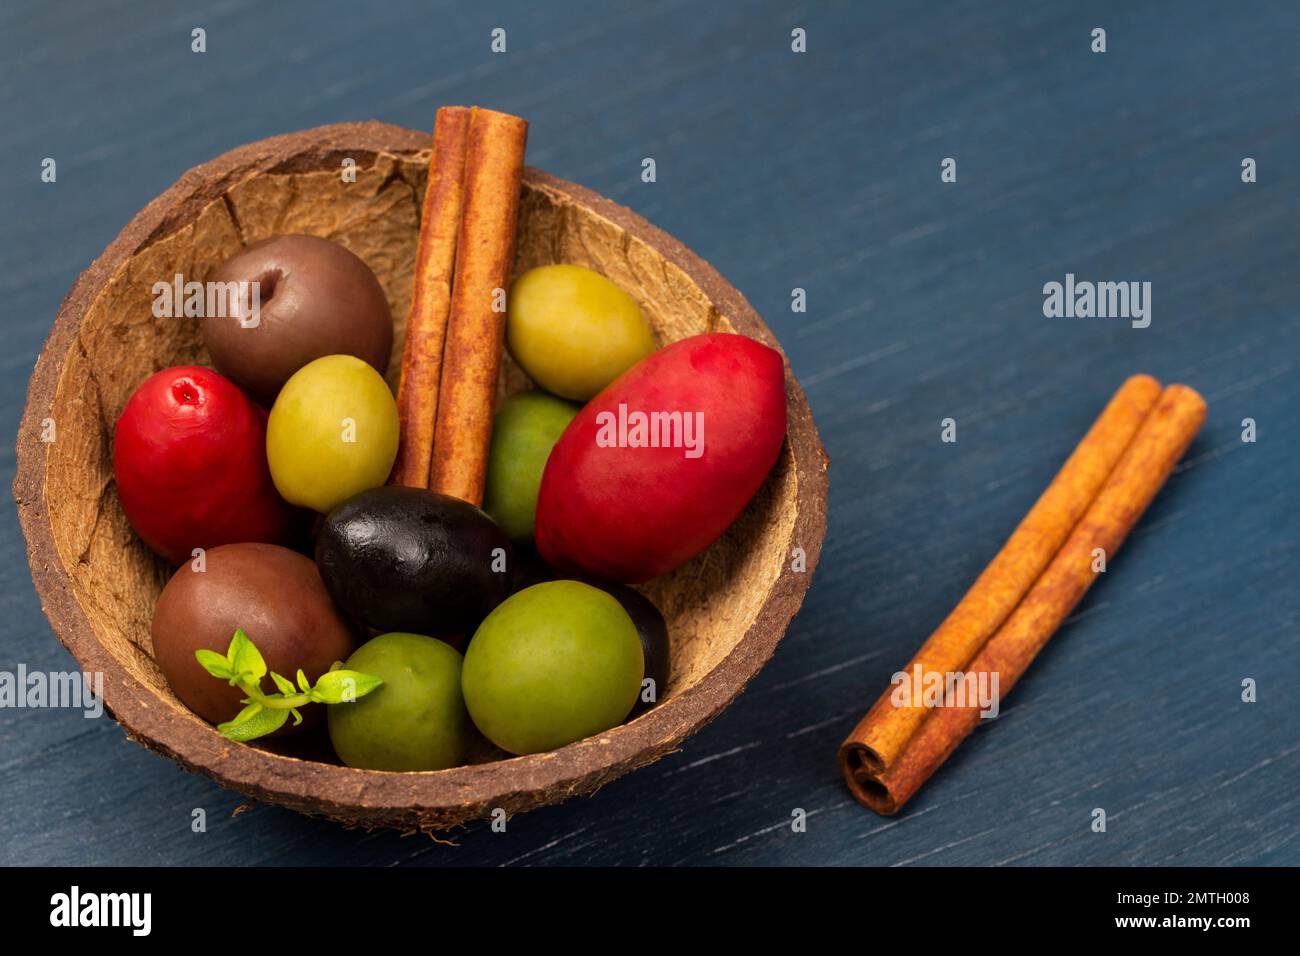 Oliven verschiedener Sorten und Farben in einer Kokosnussschale. Zimtstangen. Speicherplatz kopieren. Draufsicht. Blauer Hintergrund. Stockfoto